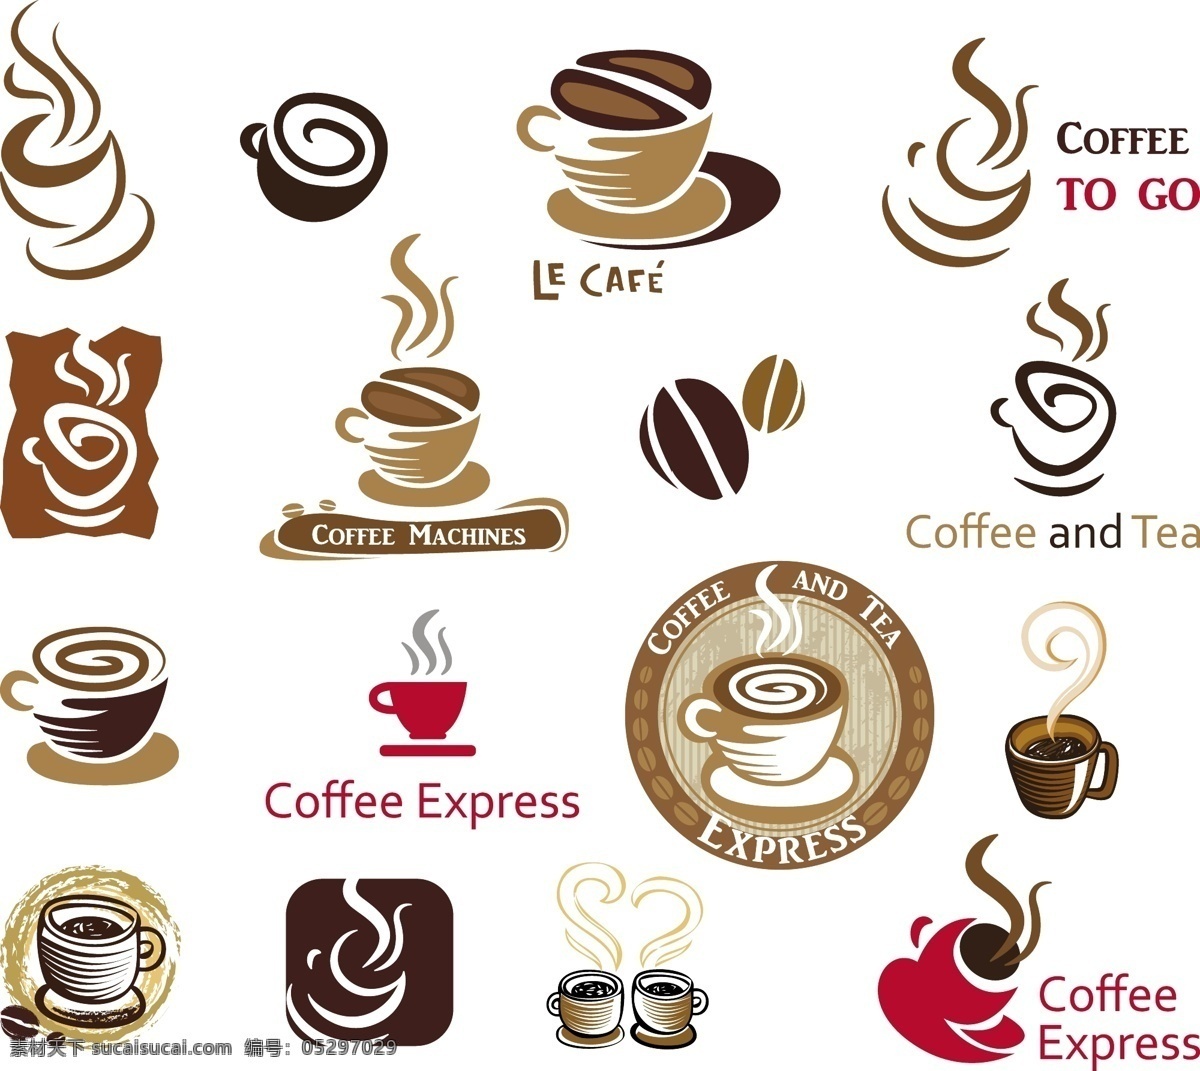 背景 标签 餐饮美食 健康 咖啡 咖啡豆 咖啡图标 生活百科 手绘 图标 矢量 模板下载 贴纸 营养 咖啡主题矢量 矢量图 其他矢量图